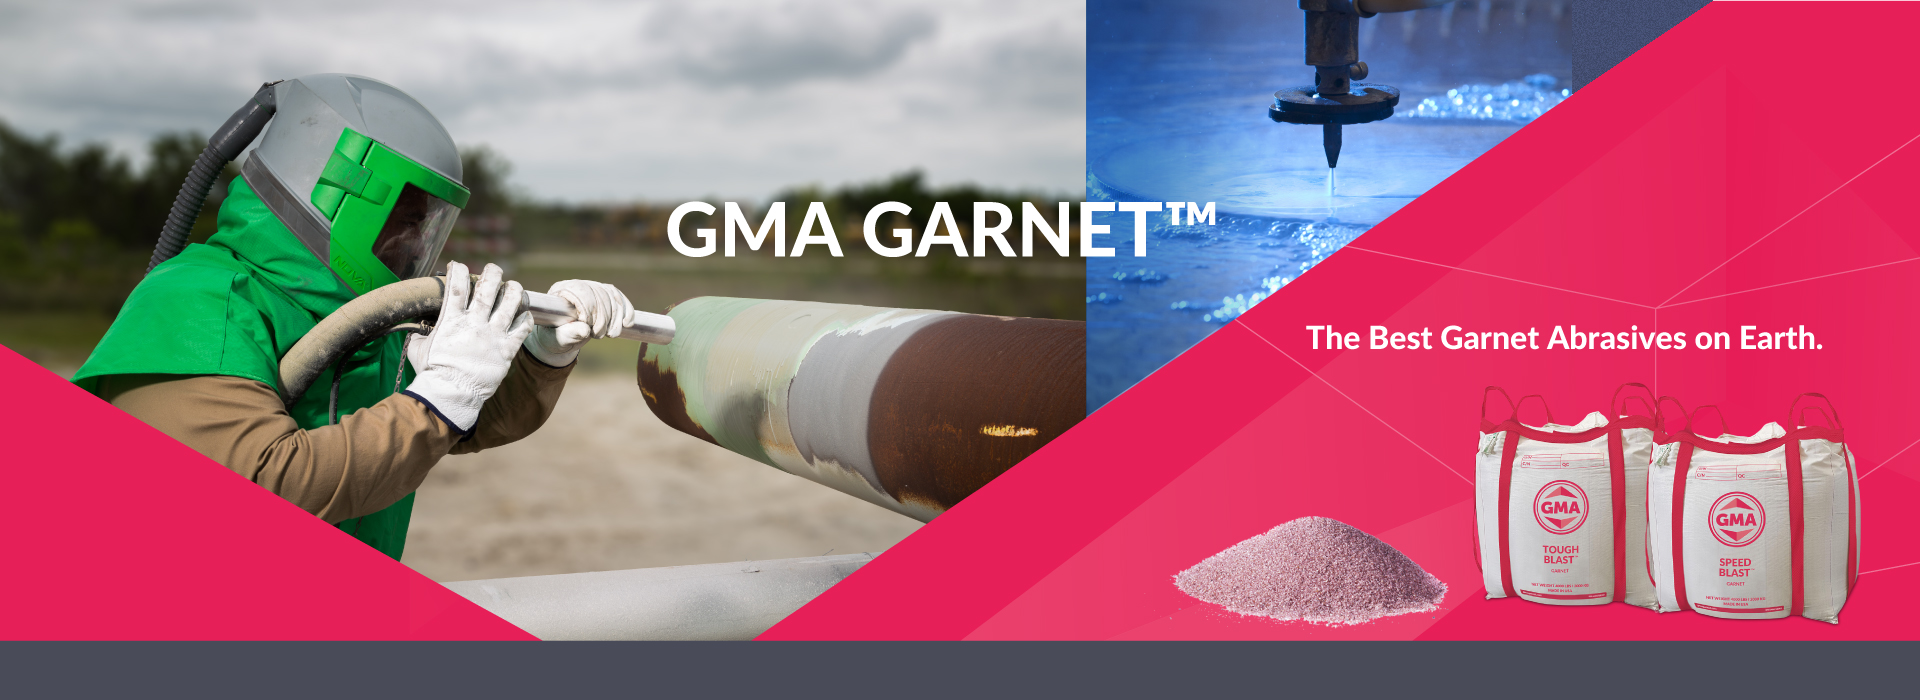 GMA Garnet